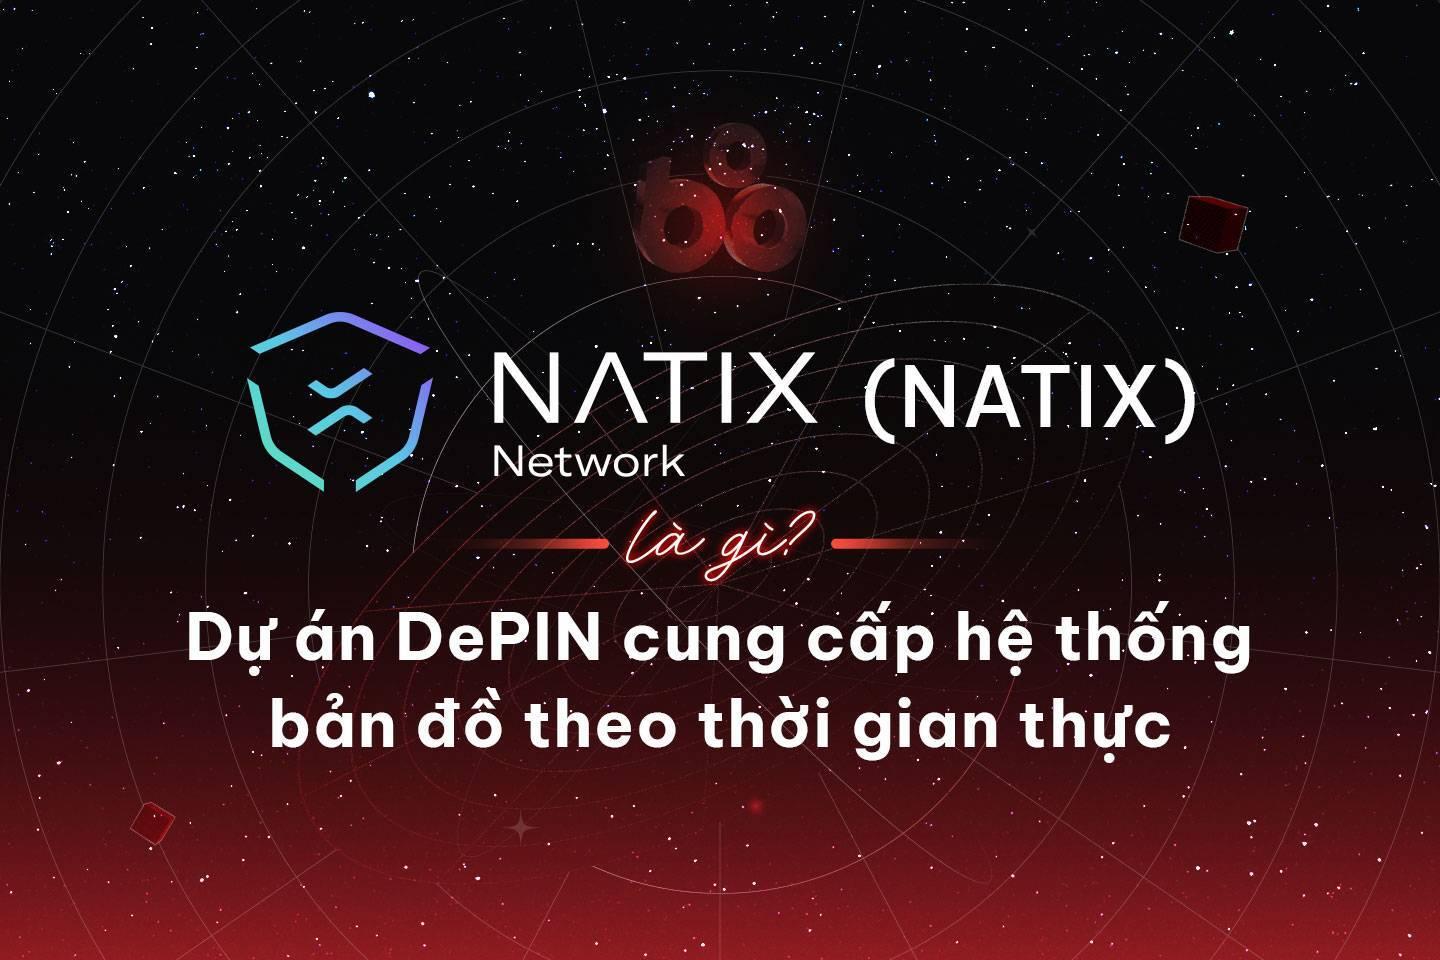 natix-network-natix-la-gi-du-an-depin-cung-cap-he-thong-ban-do-theo-thoi-gian-thuc